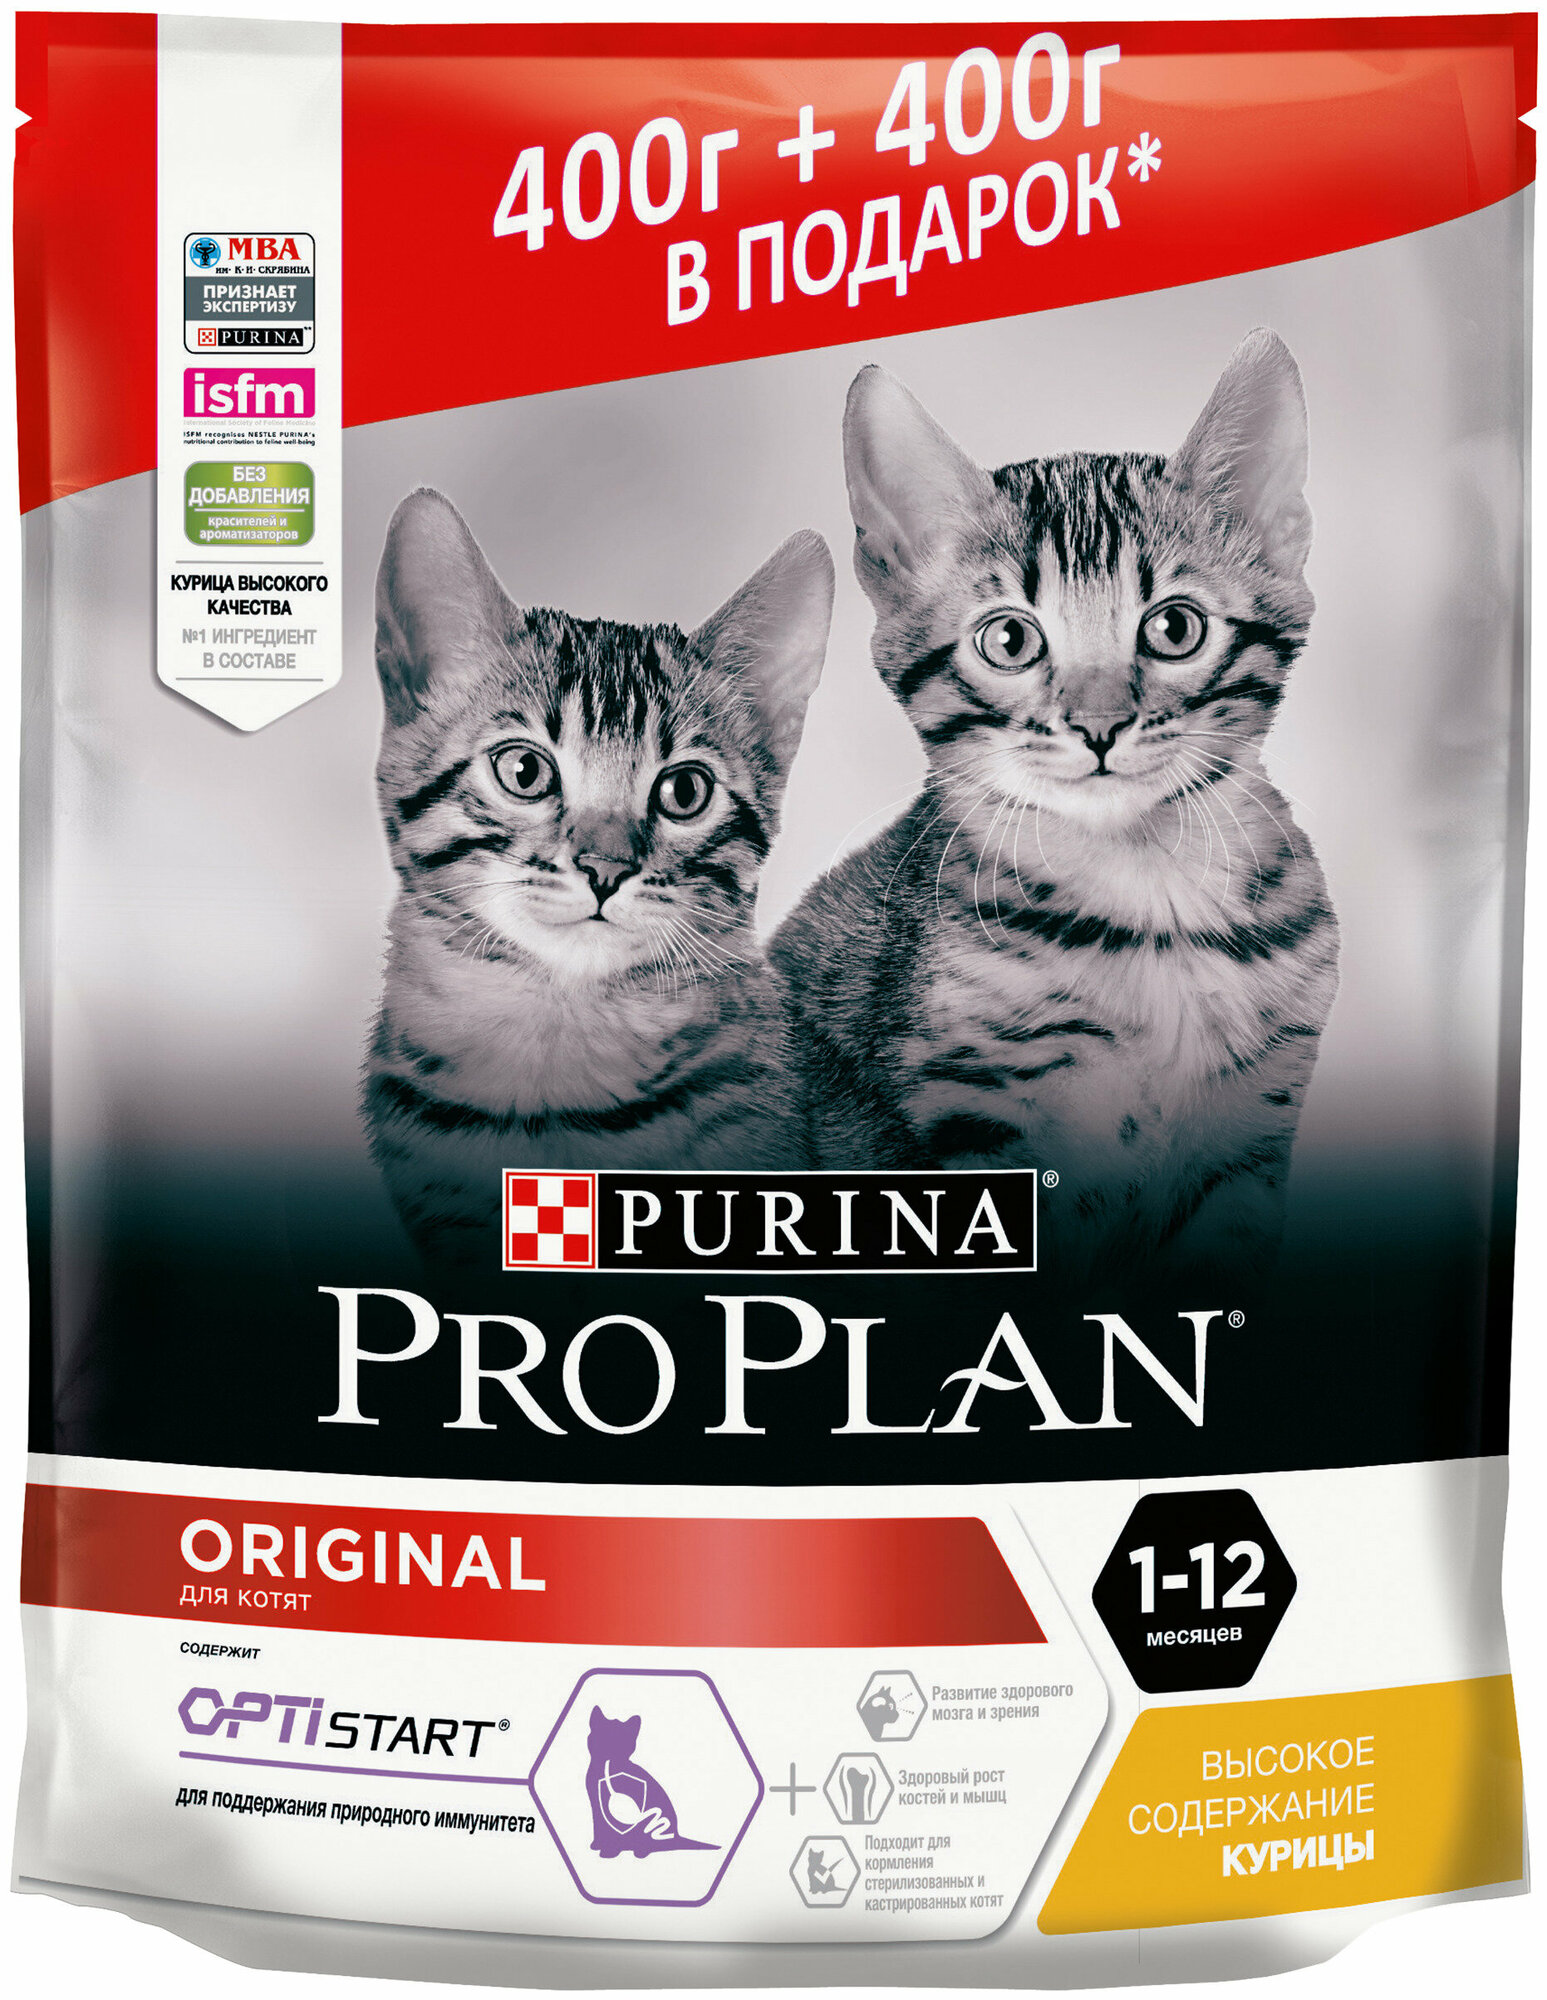 Сухой корм для котят Pro Plan Original OPTIStart, с курицей 400 г+ 400 г в подарок (800 г.)